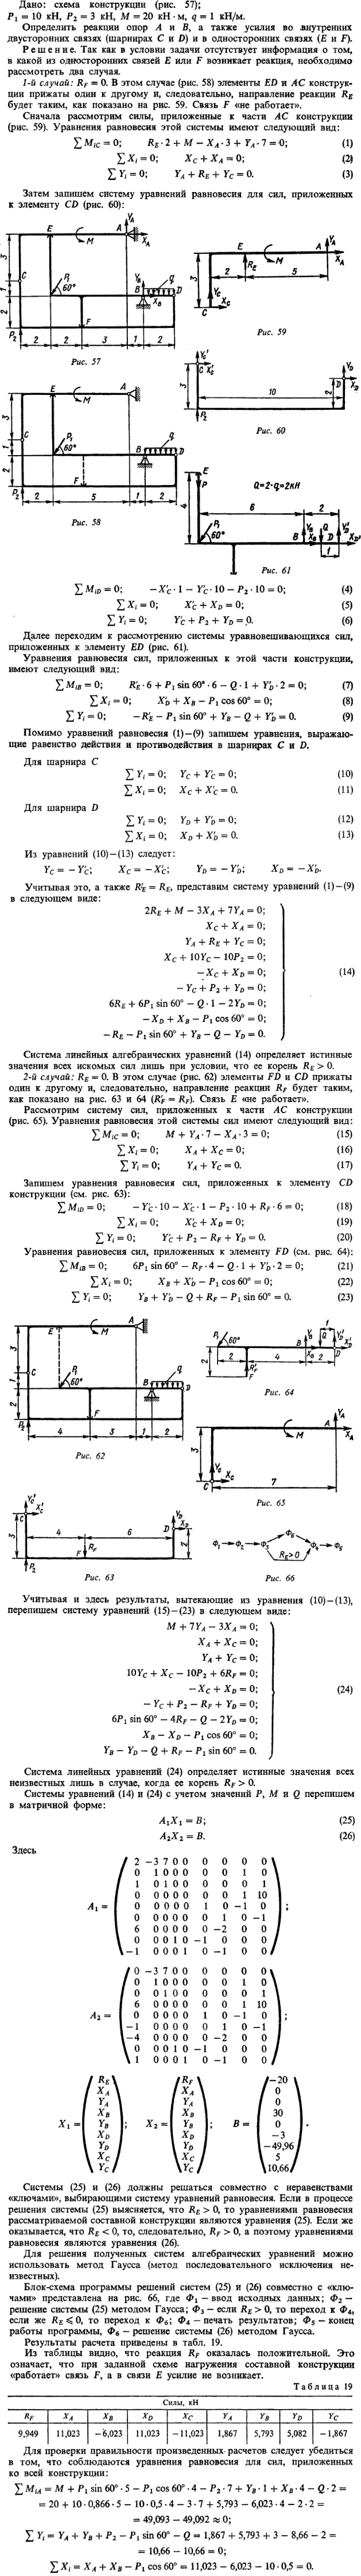 Дано схема конструкции P1=10 кН, P2=3 кН, M=20 кН*м, q=1 кН/м. Определить реакции опор A и B, а также усилия во внутренних..., Задача 14258, Теоретическая механика